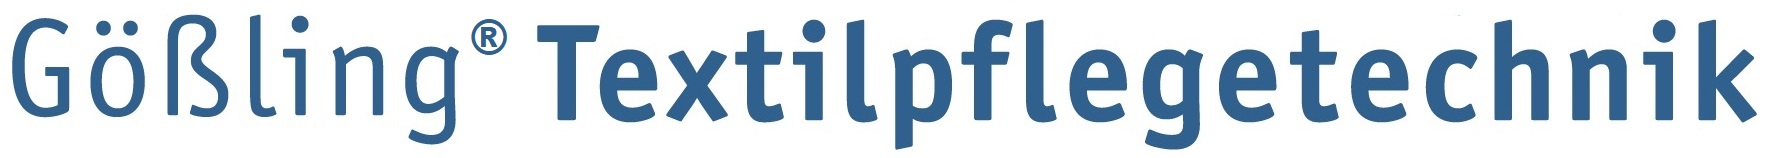 Gößling® Textilpflegetechnik Onlineshop-Logo